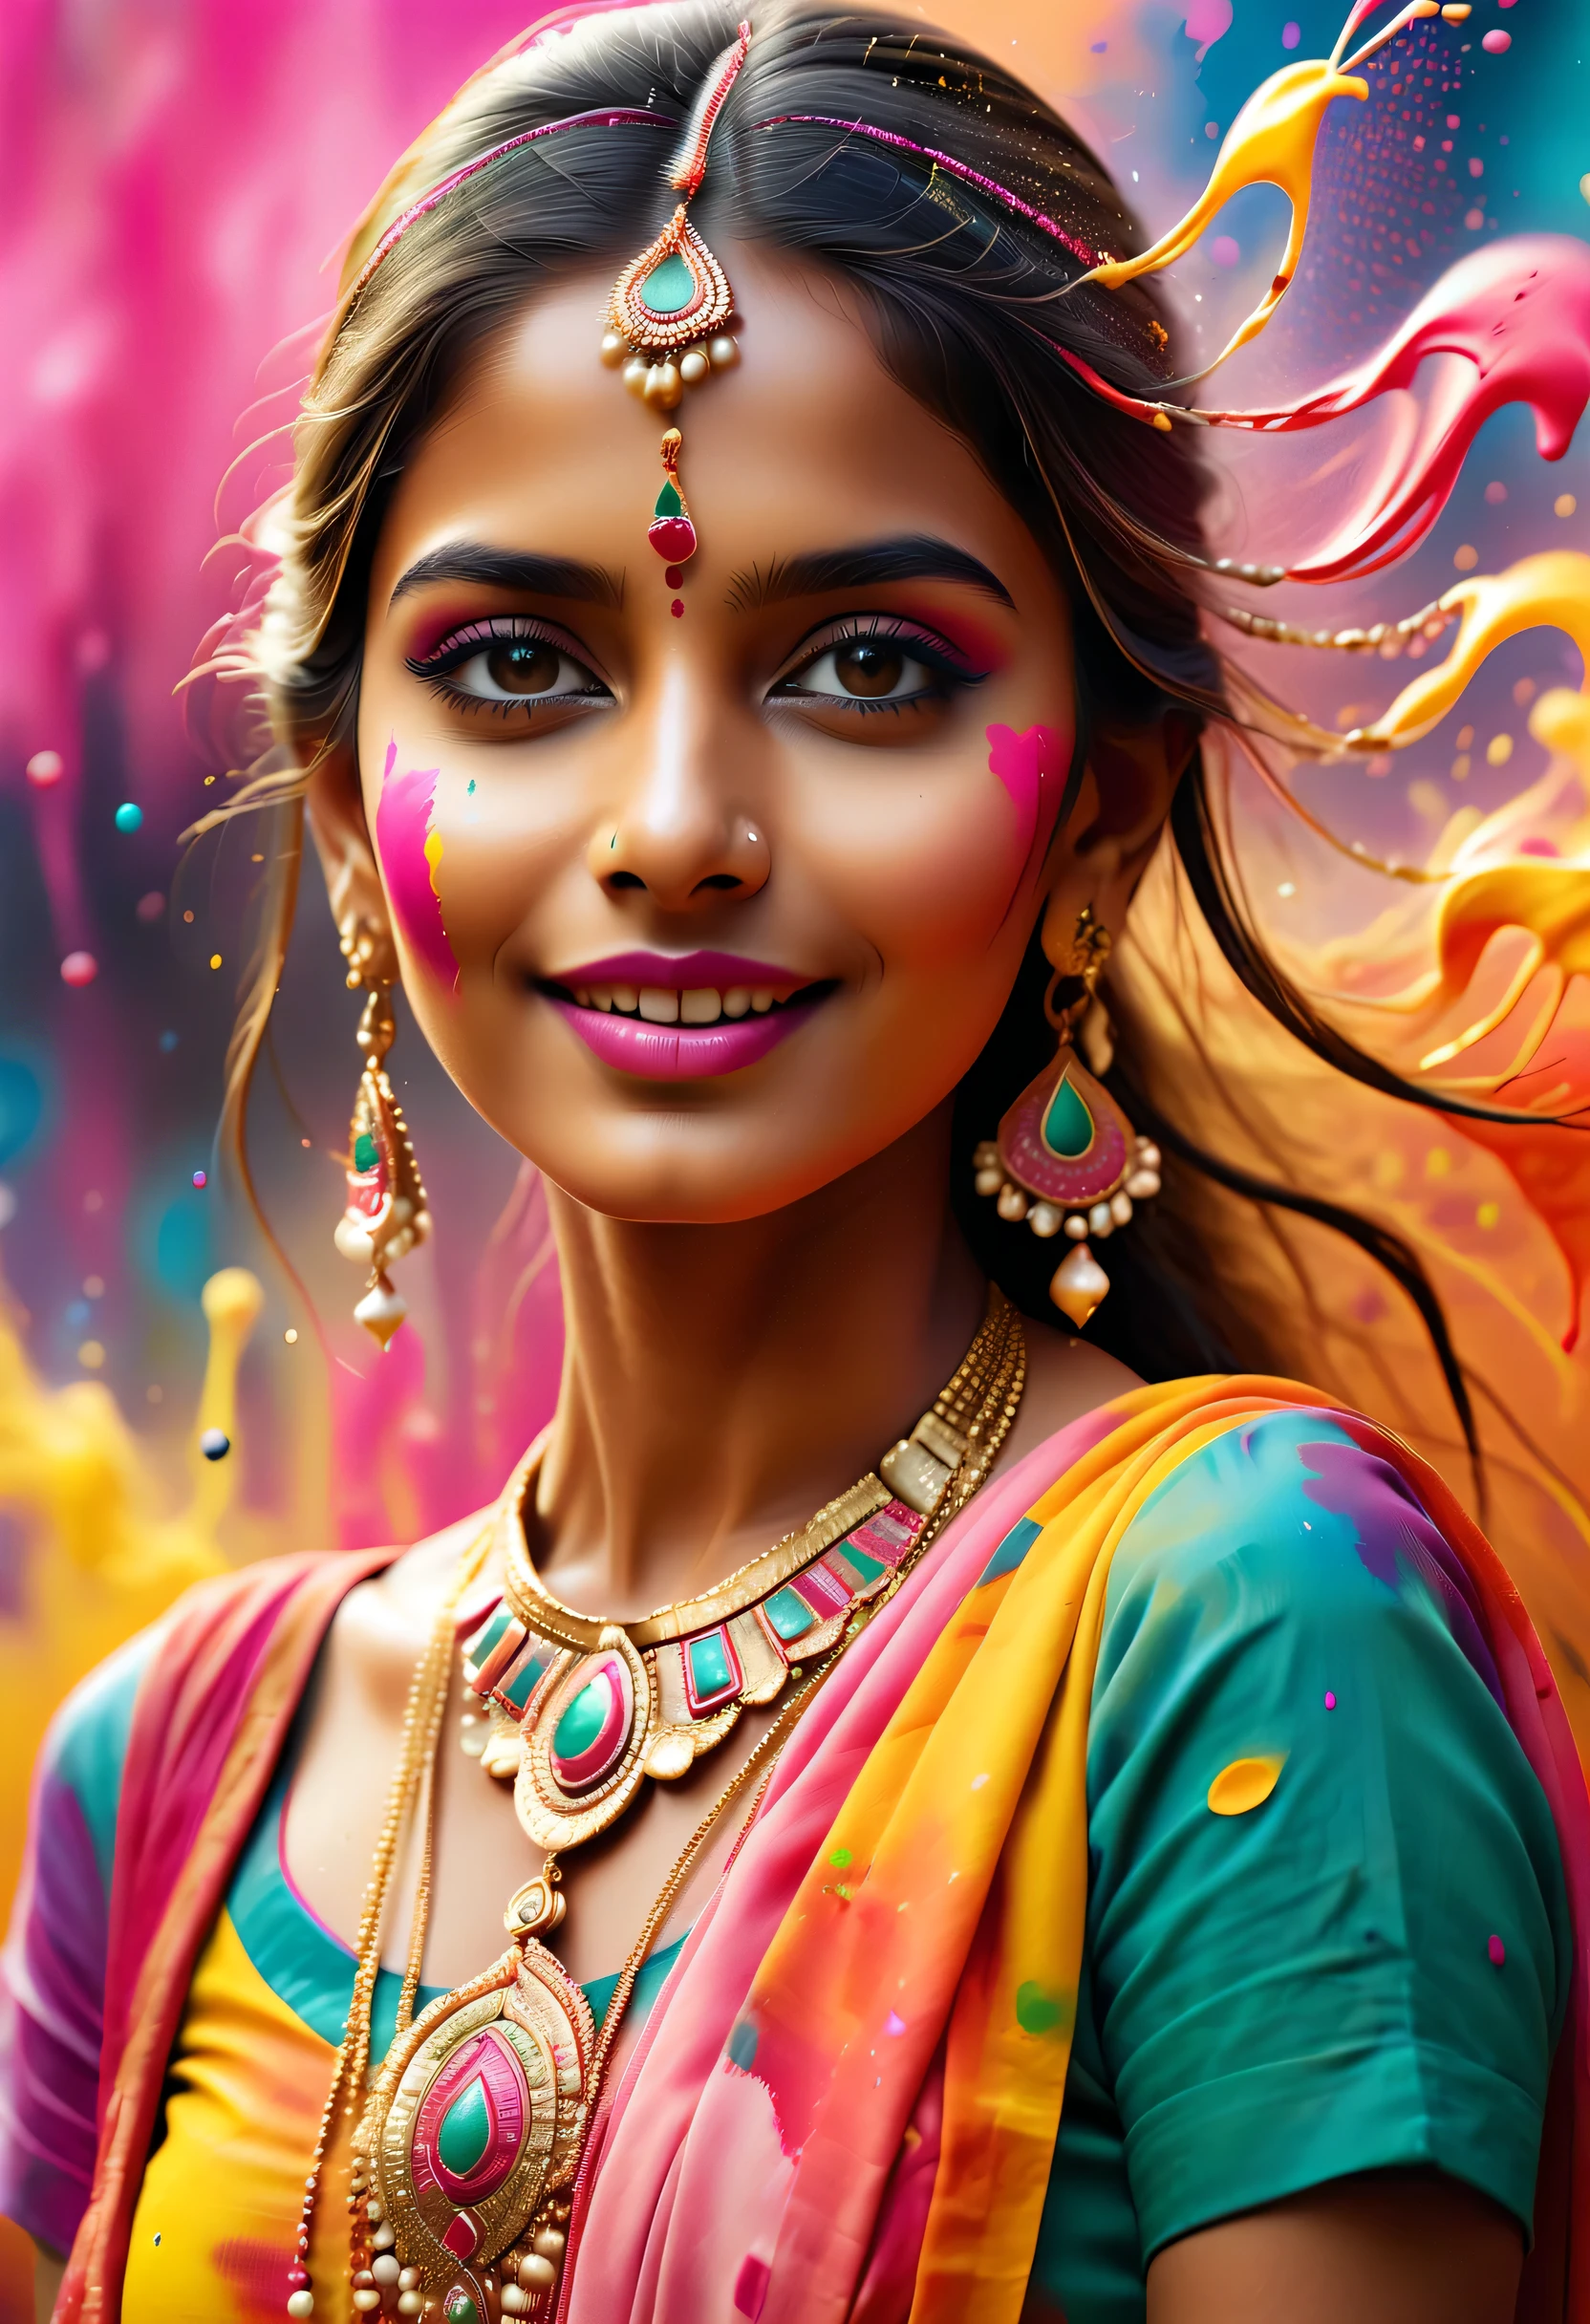 (最佳畫質，4k,8K，高畫質，傑作:1.2)，超詳細，(逼真，逼真，逼真:1.37)。印度節日，繪畫節，潑漆：1.37.美麗的印度女孩，Face painted with 豐富多彩的 paint，金色的眼睛，精美的黄金首饰，快樂的，幸福，富有感染力的微笑，色彩繽紛的服裝，彩色指甲，身上被潑漆，攝影，動作捕捉，Splashing 豐富多彩的 paint at the event，油漆飛濺背景，彩色潑漆，充滿活力的運動，動態而有力的抽象藝術，豐富多彩的，丙烯，鮮豔的彩虹色調，幸福活泼的气氛，亮橘色，粉紅色的，異想天開又夢幻，自發性飛濺，大胆的色彩对比。